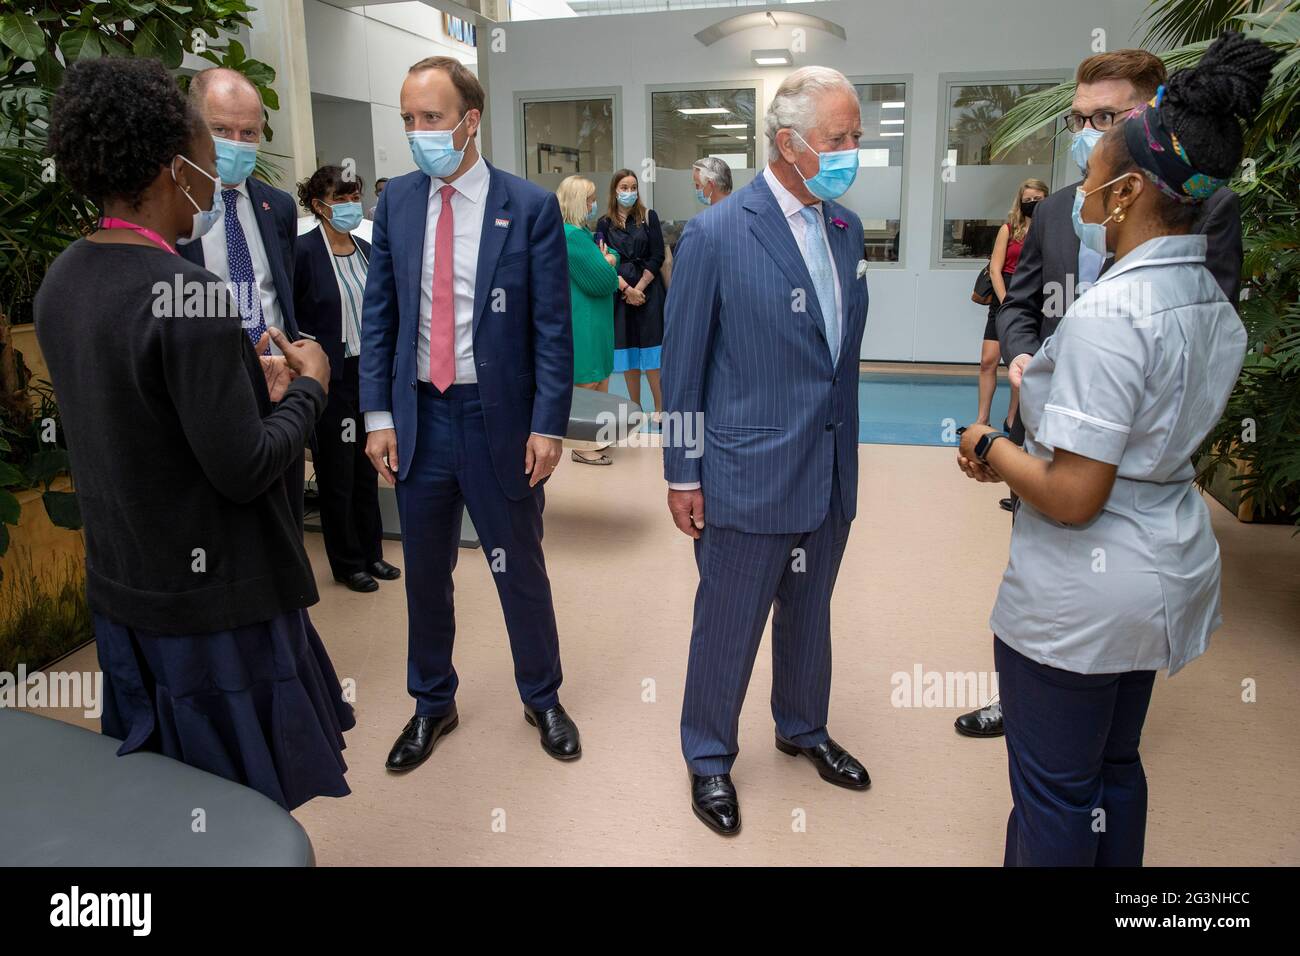 Gesundheitsminister Matt Hancock und Prince Charles treffen sich mit NHS-Mitarbeitern während eines Besuchs im Chelsea und Westminster Hospital in West-London. Bilddatum: Donnerstag, 17. Juni 2021. Stockfoto